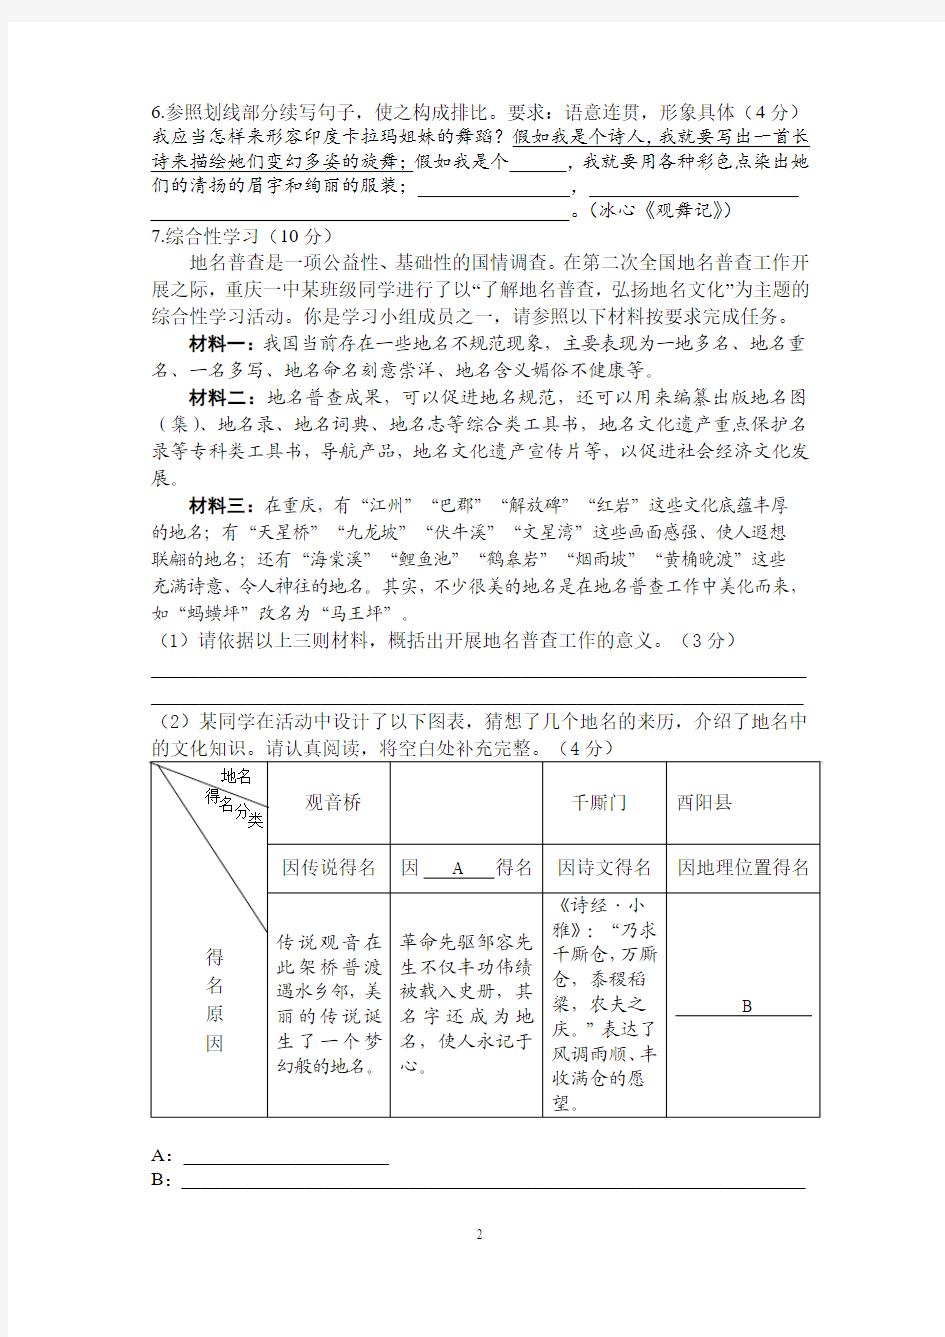 重庆一中初2016级15-16学年(下)第一次月考——语文